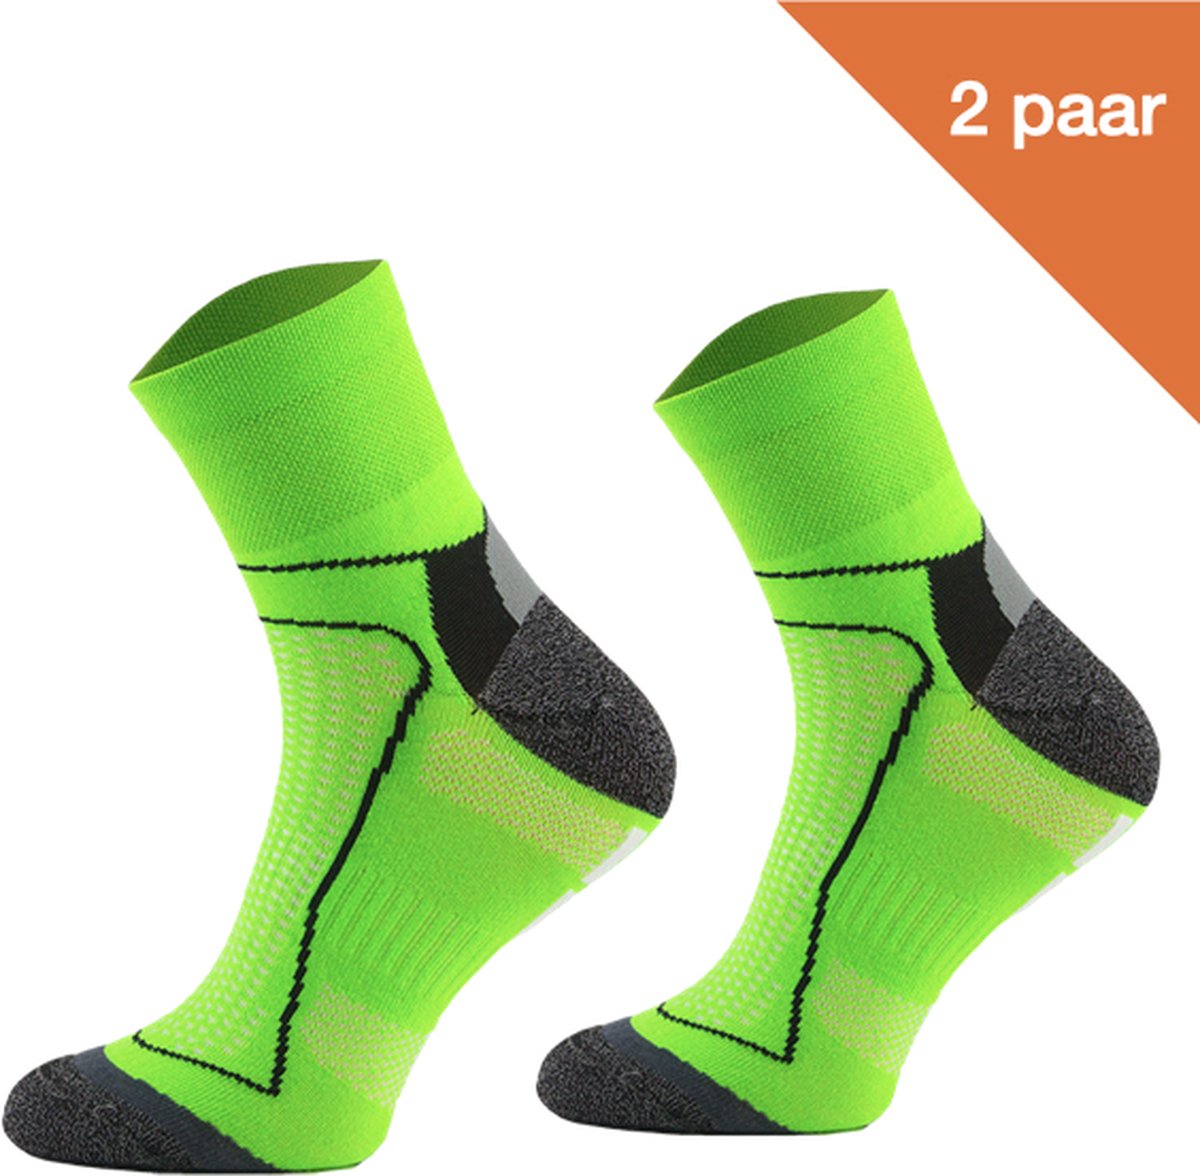 Comodo Fietssokken Polyester BIK1 - Neon groen - 2 paar - Maat 43-46